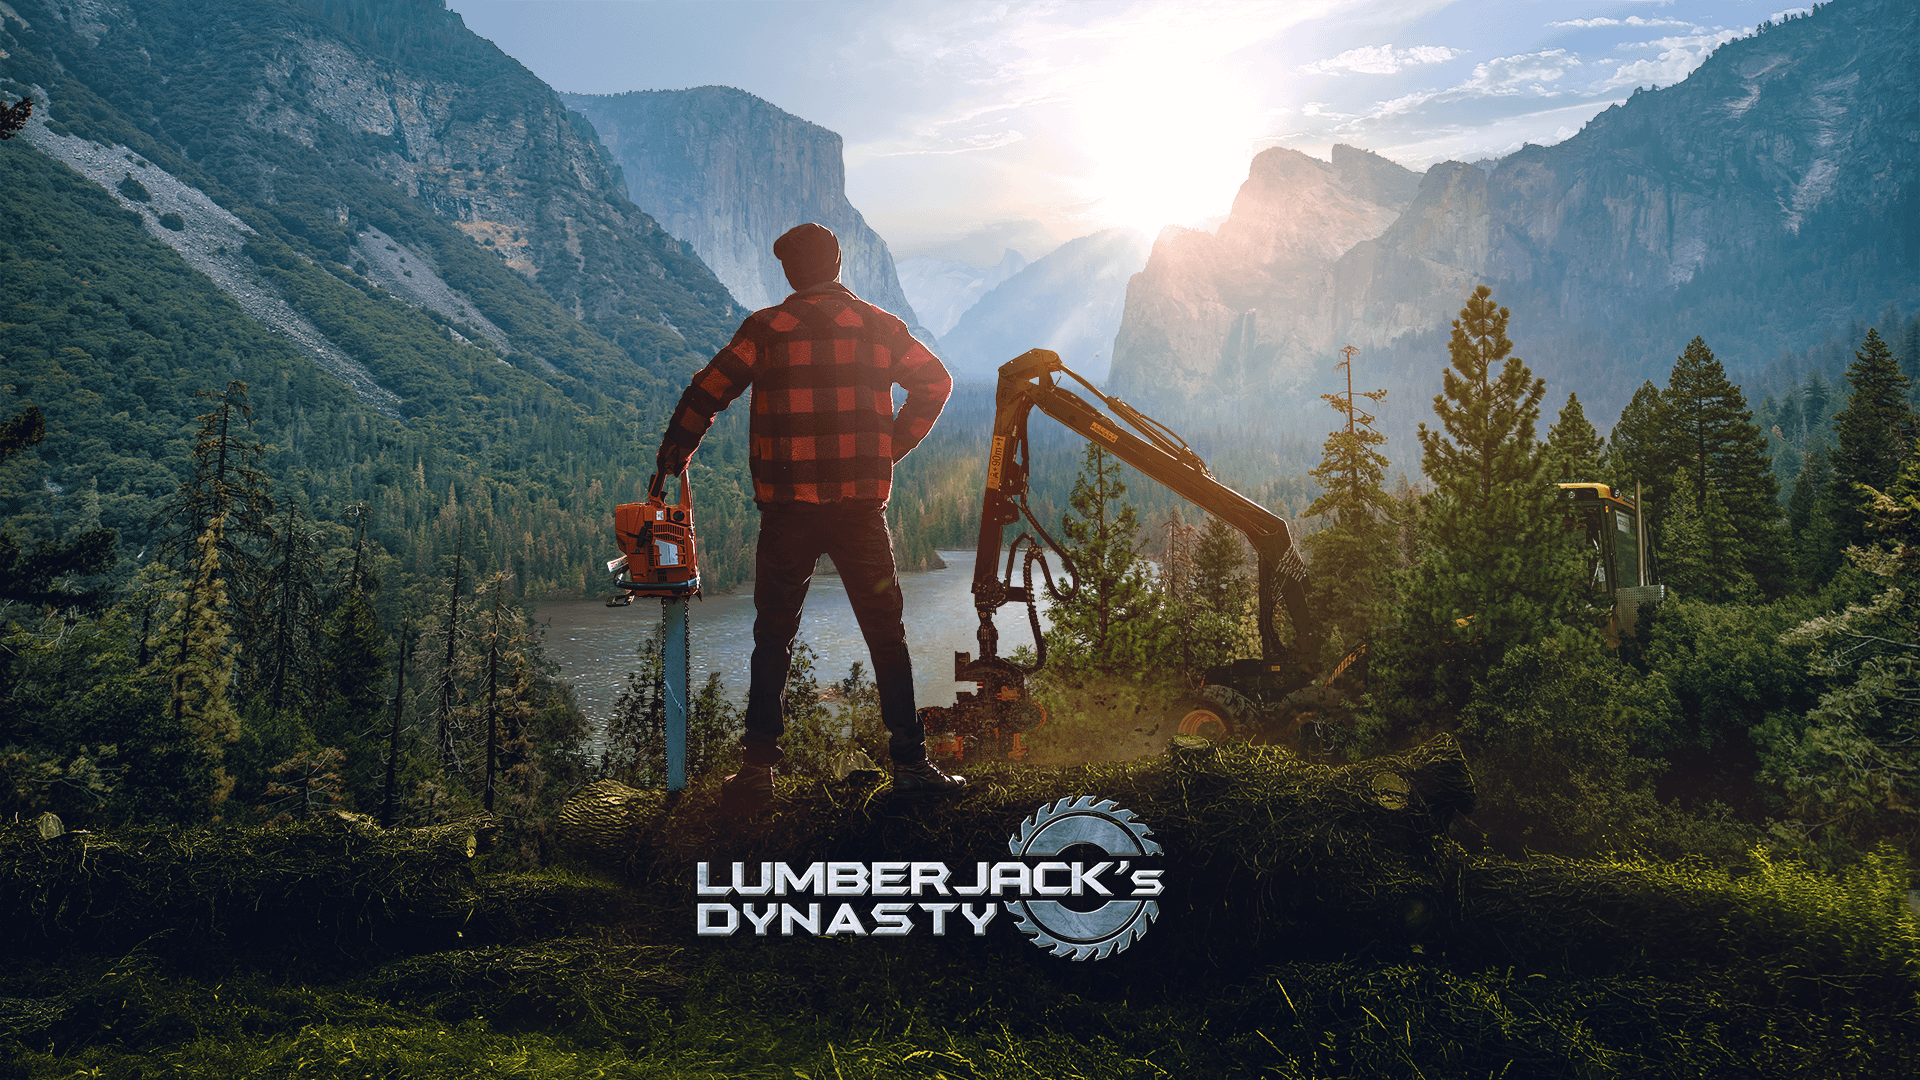 Lumberjack s dynasty. Симулятор лесоруба. Lumberjack Dynasty системные требования. Lumberjack's Dynasty - Династия лесорубов и фермеров #1.